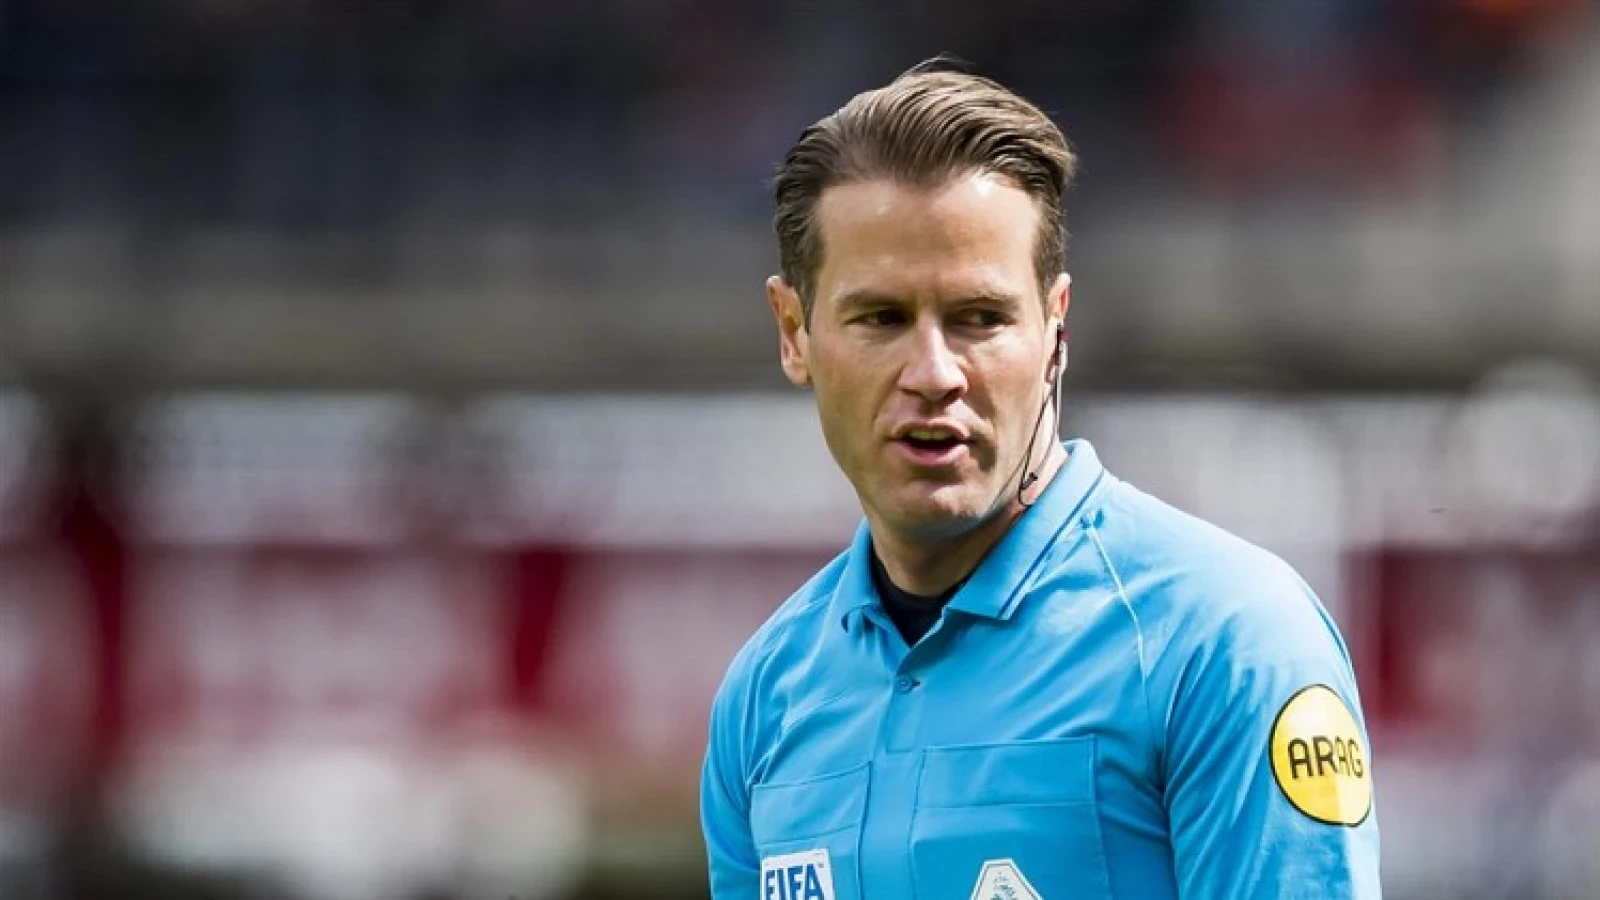 Danny Makkelie scheidsrechter tijdens wedstrijd tussen Feyenoord en FC Twente